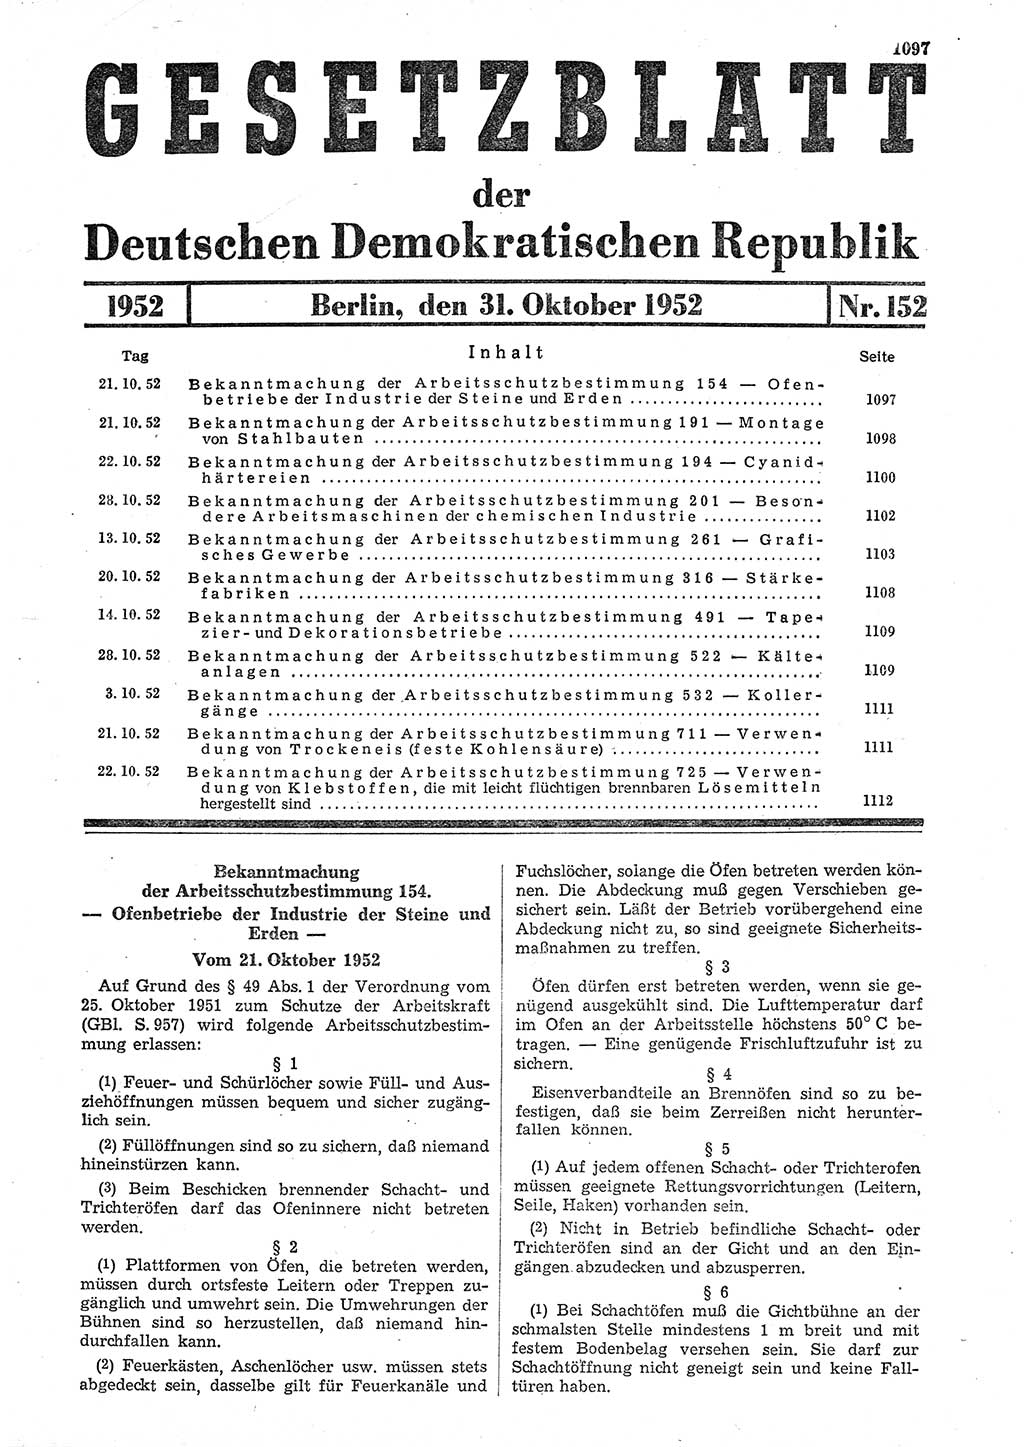 Gesetzblatt (GBl.) der Deutschen Demokratischen Republik (DDR) 1952, Seite 1097 (GBl. DDR 1952, S. 1097)